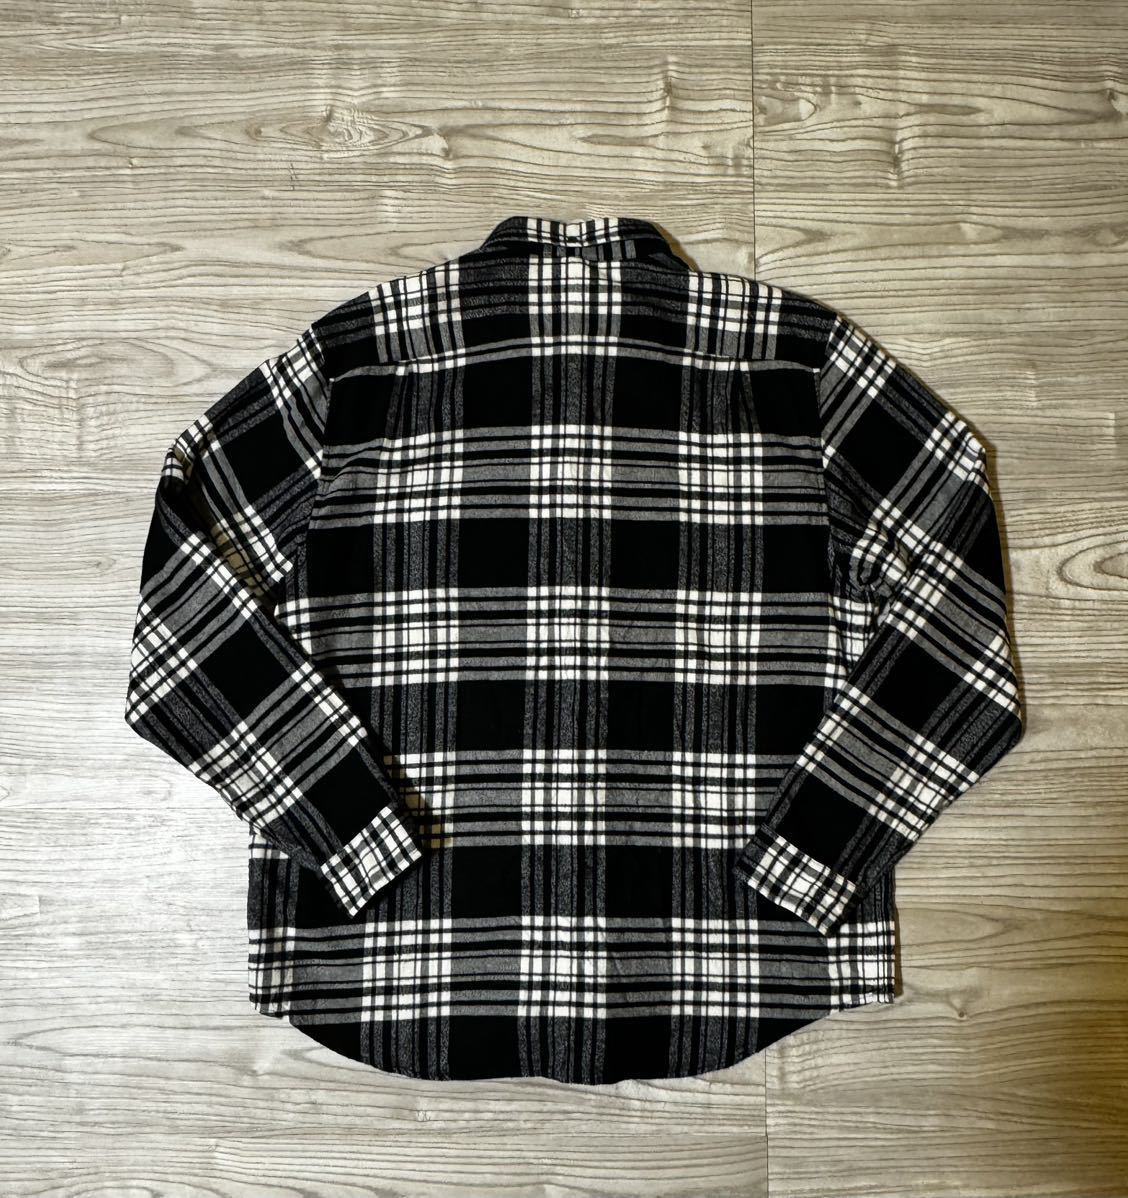 Supreme Tartan Flannel Shirt XL シュプリーム タータンチェックネルシャツ ボタンダウン 長袖シャツ_画像2